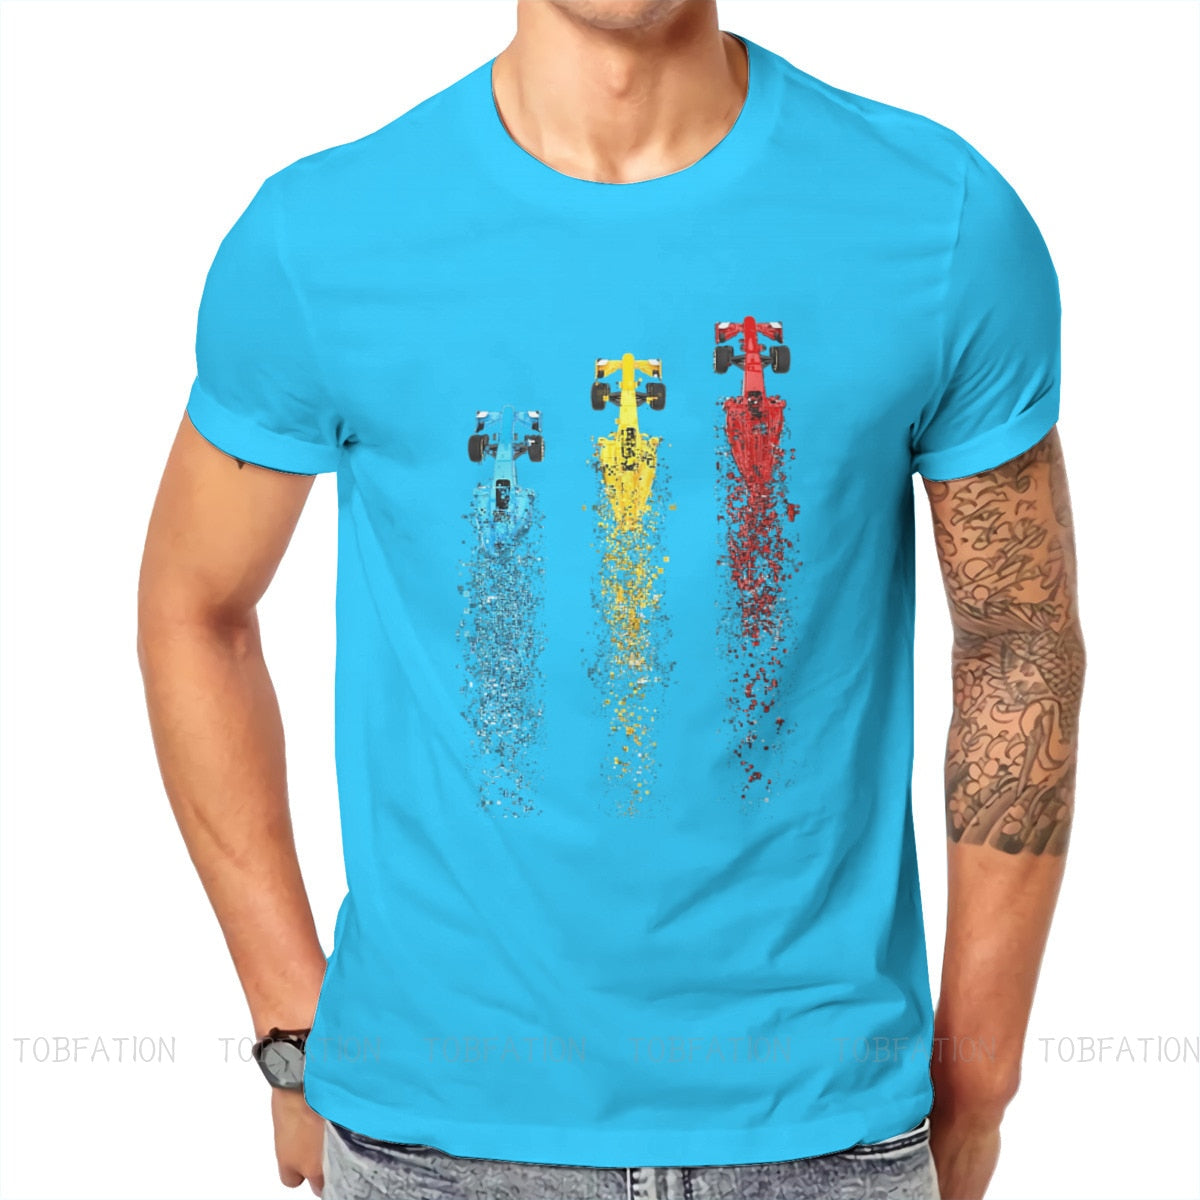 T-shirt essentiel for Sale avec l'œuvre « Merry Race-mas : Une idée cadeau  de formule 1 pour les amoureux ou les fans de F1 » de l'artiste  Best-Designers